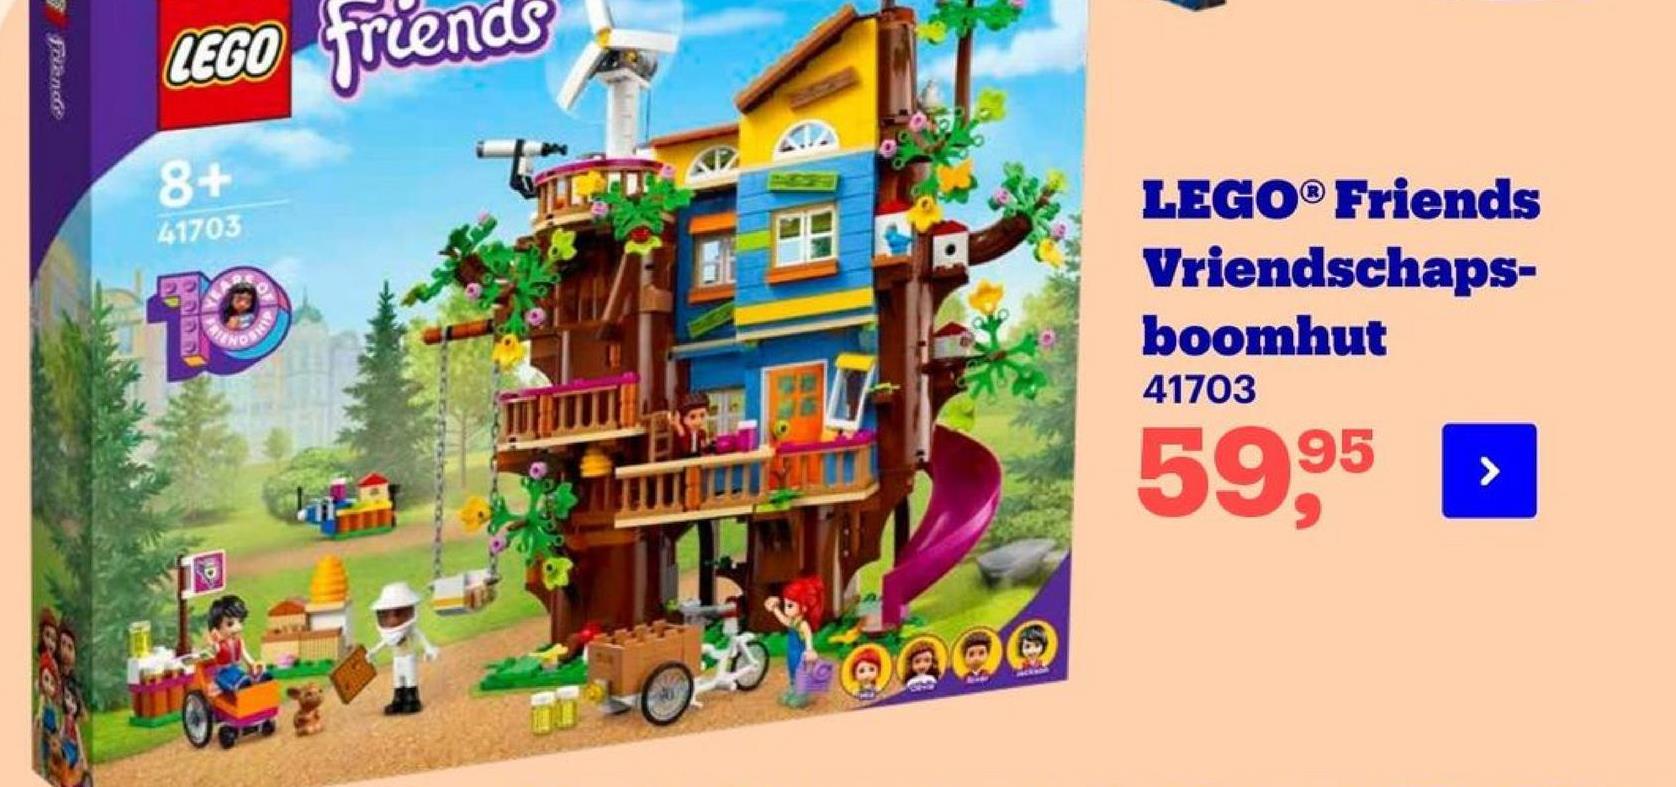 LEGO friends
8+
41703
LEGO® Friends
Vriendschaps-
boomhut
41703
DI
ONDER
59,95
be
10
MERS
o
